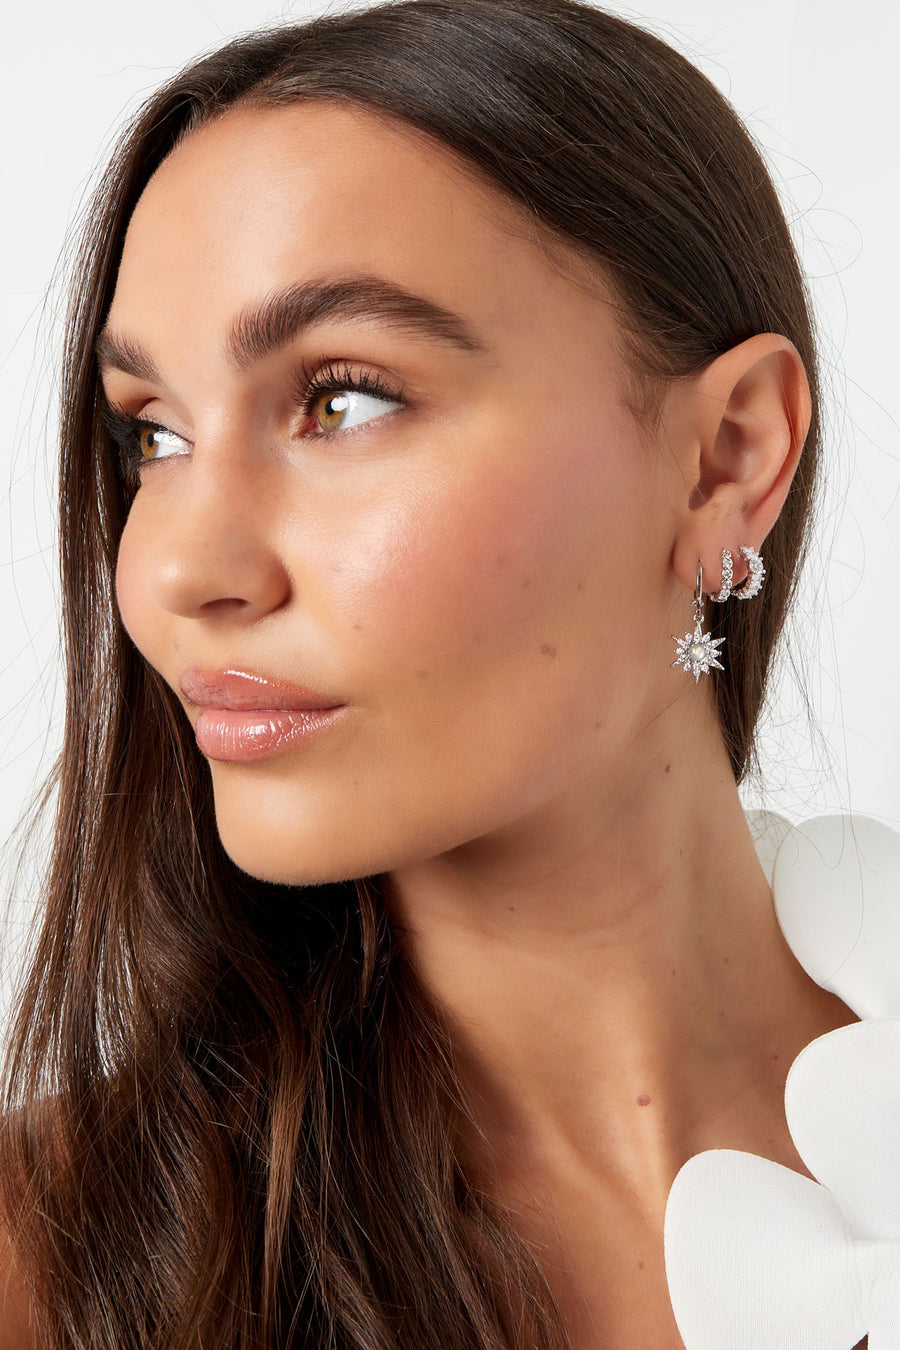 Samantha Silver Earring Bundle - 3 pairs of earrings